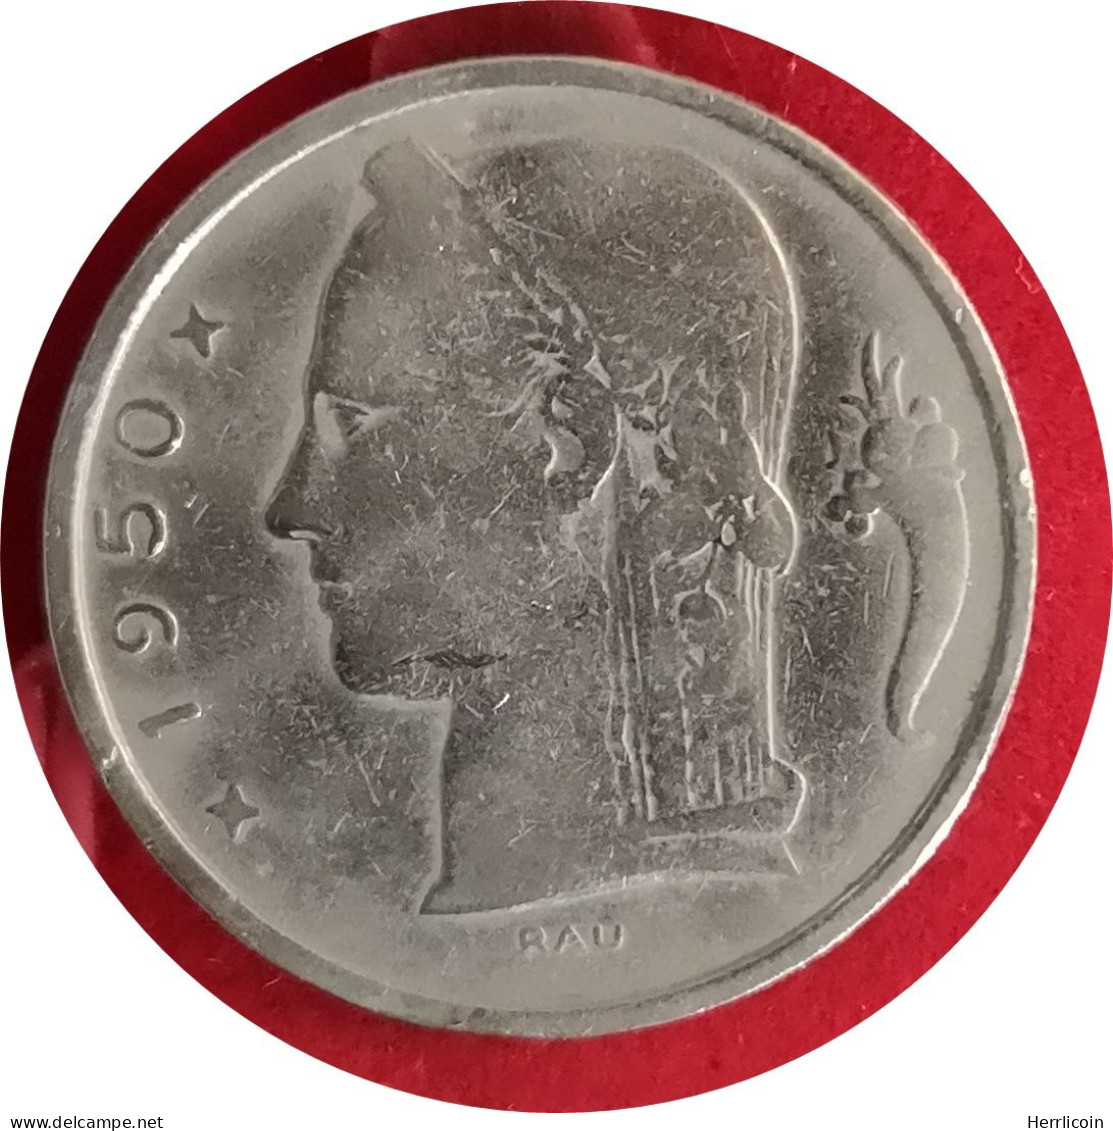 Monnaie Belgique - 1950 - 5 Francs - Type Cérès En Néerlandais - 5 Frank